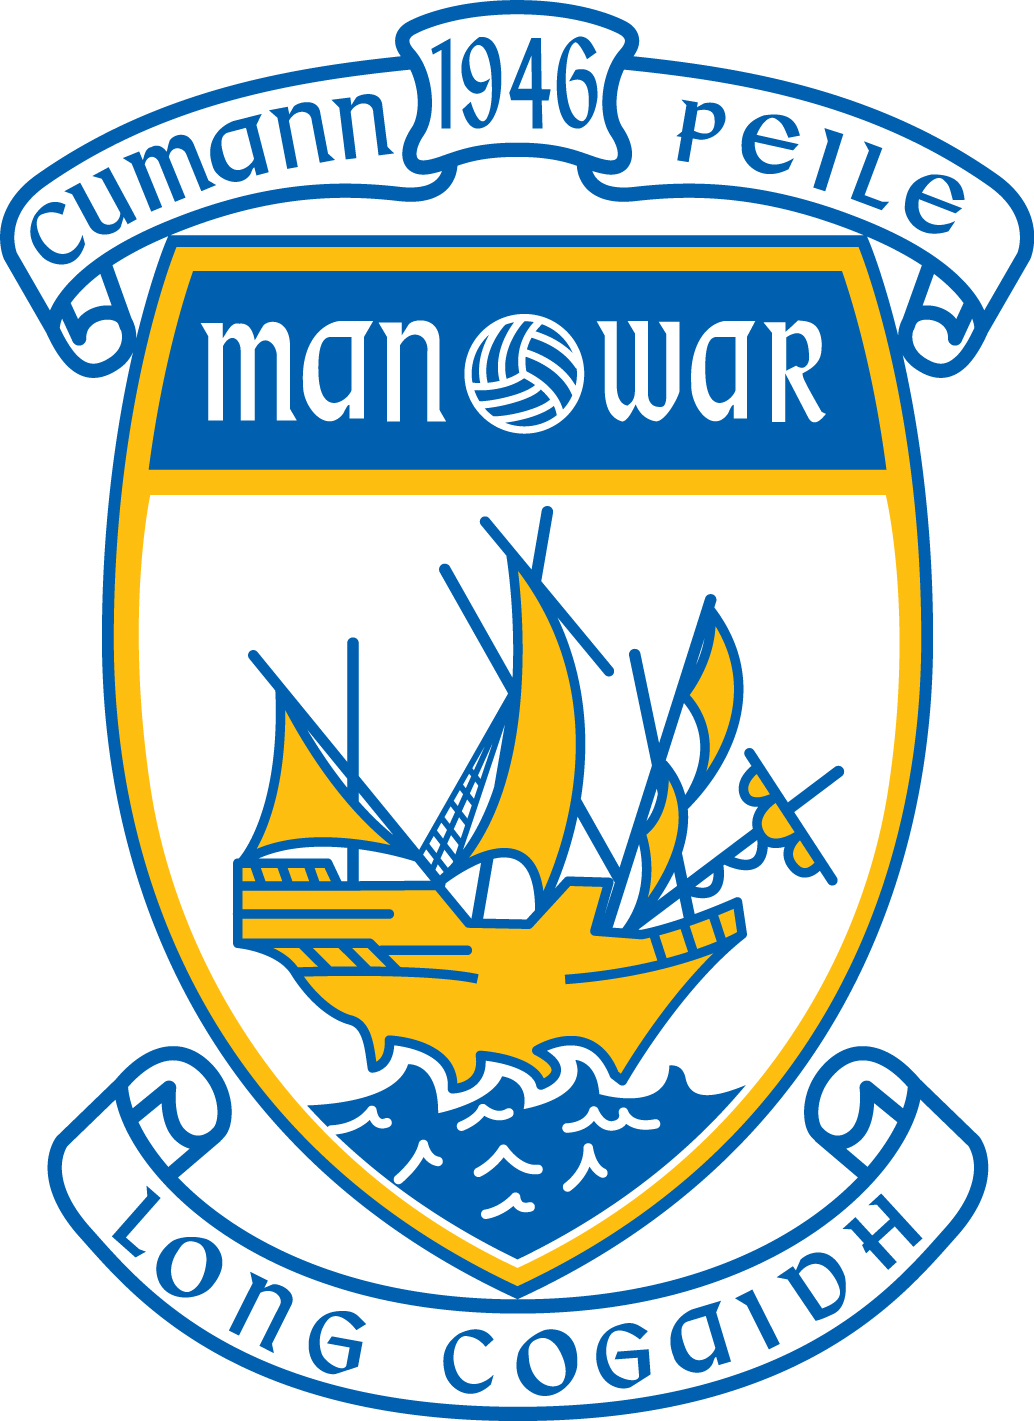 Man O'War GFC Club Crest